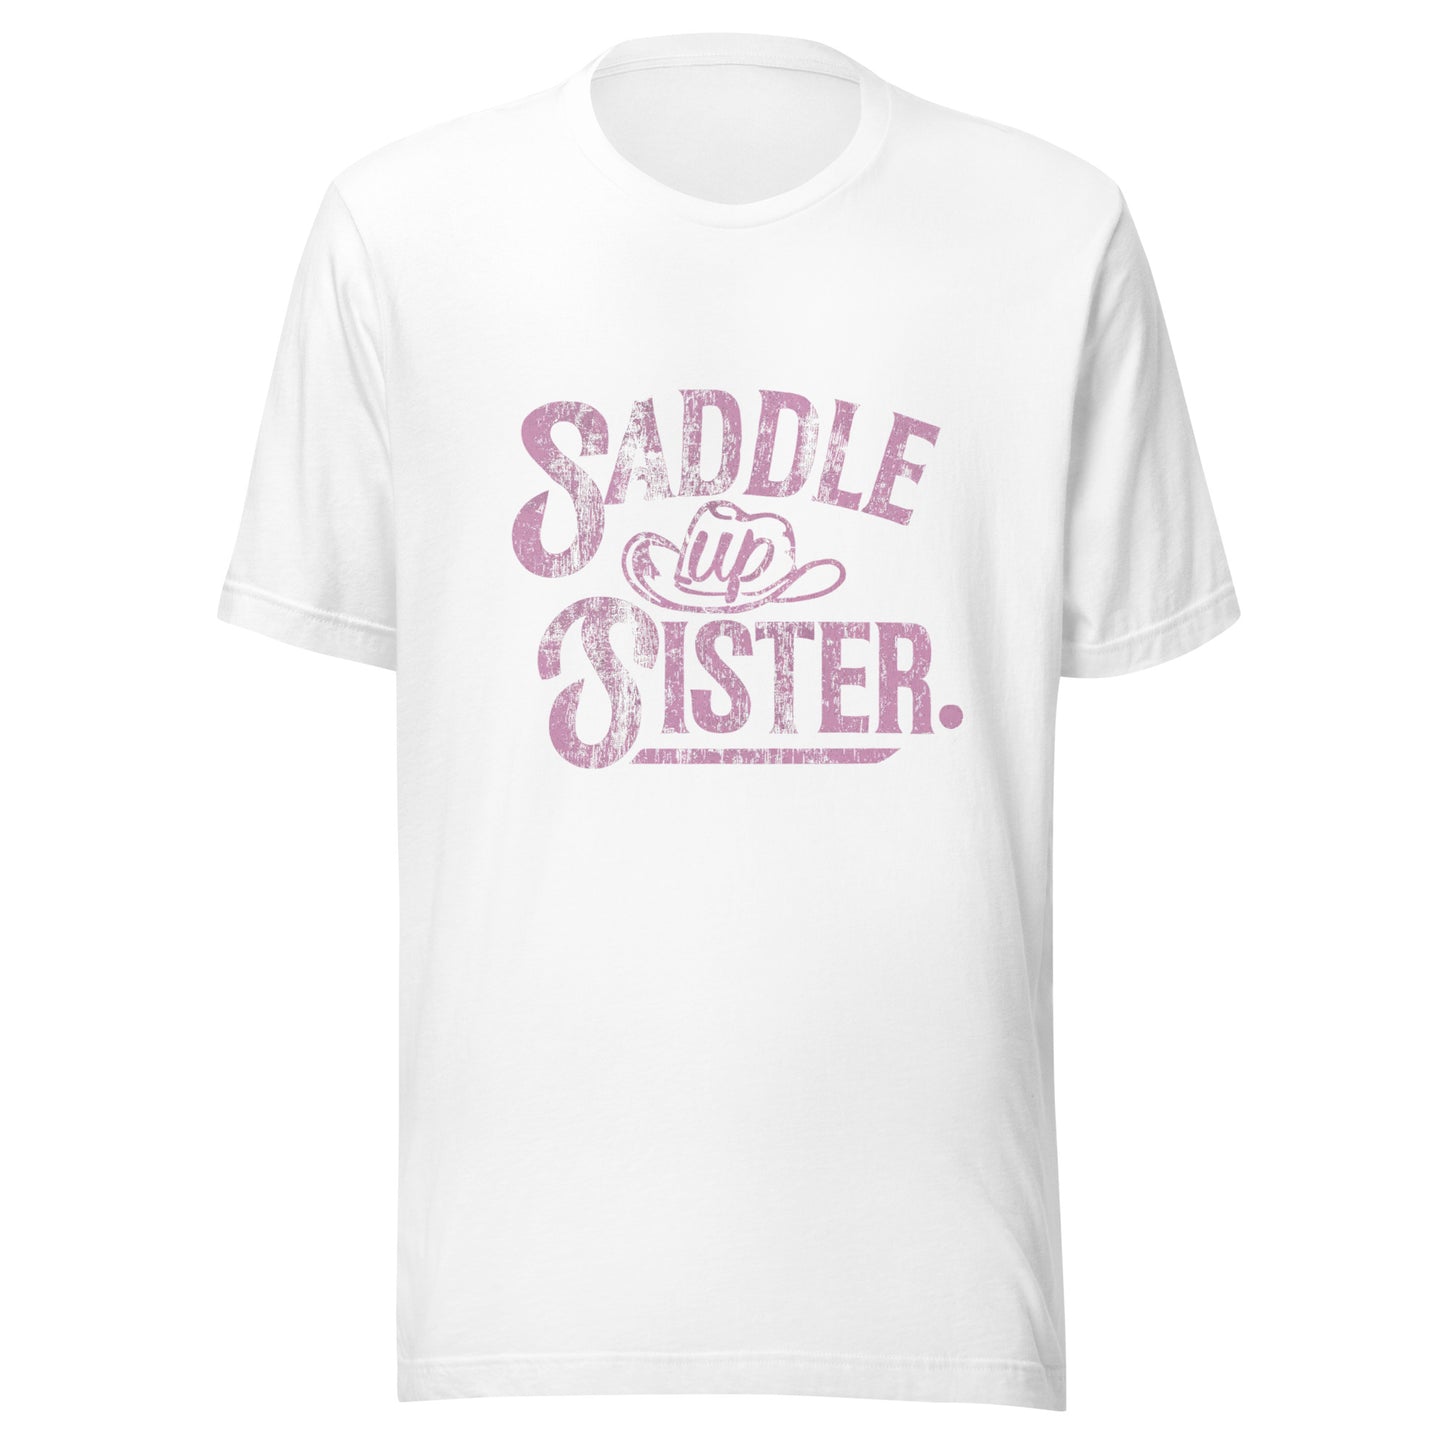 'Saddle Up Sister' Tee